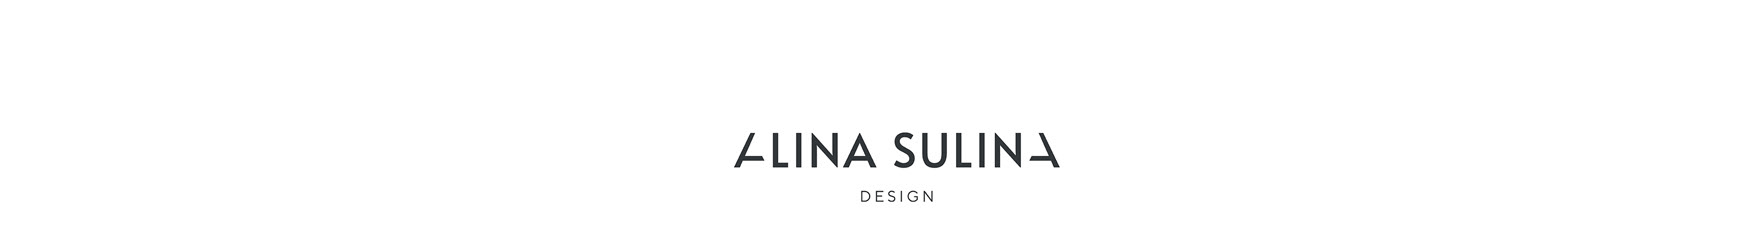 Alina Sulina Design's profile banner